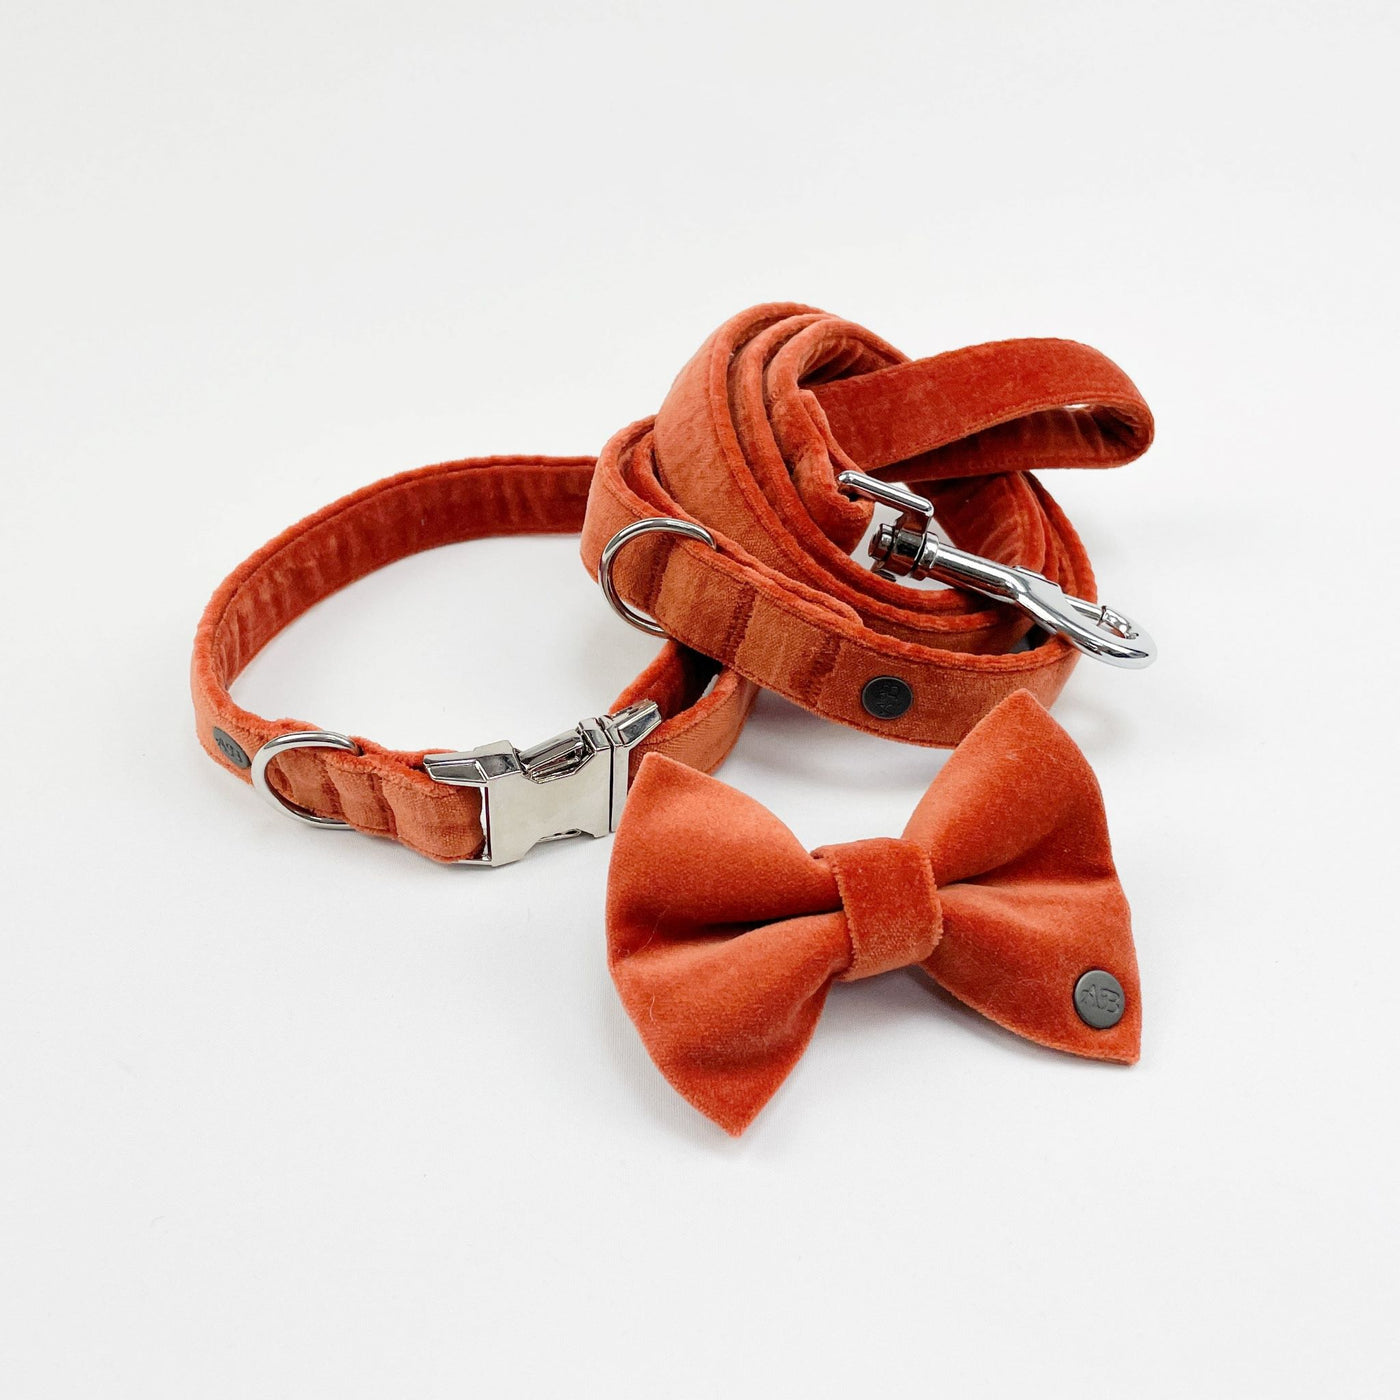 The Luxury Burnt Orange Velvet Dog Accessory Range.